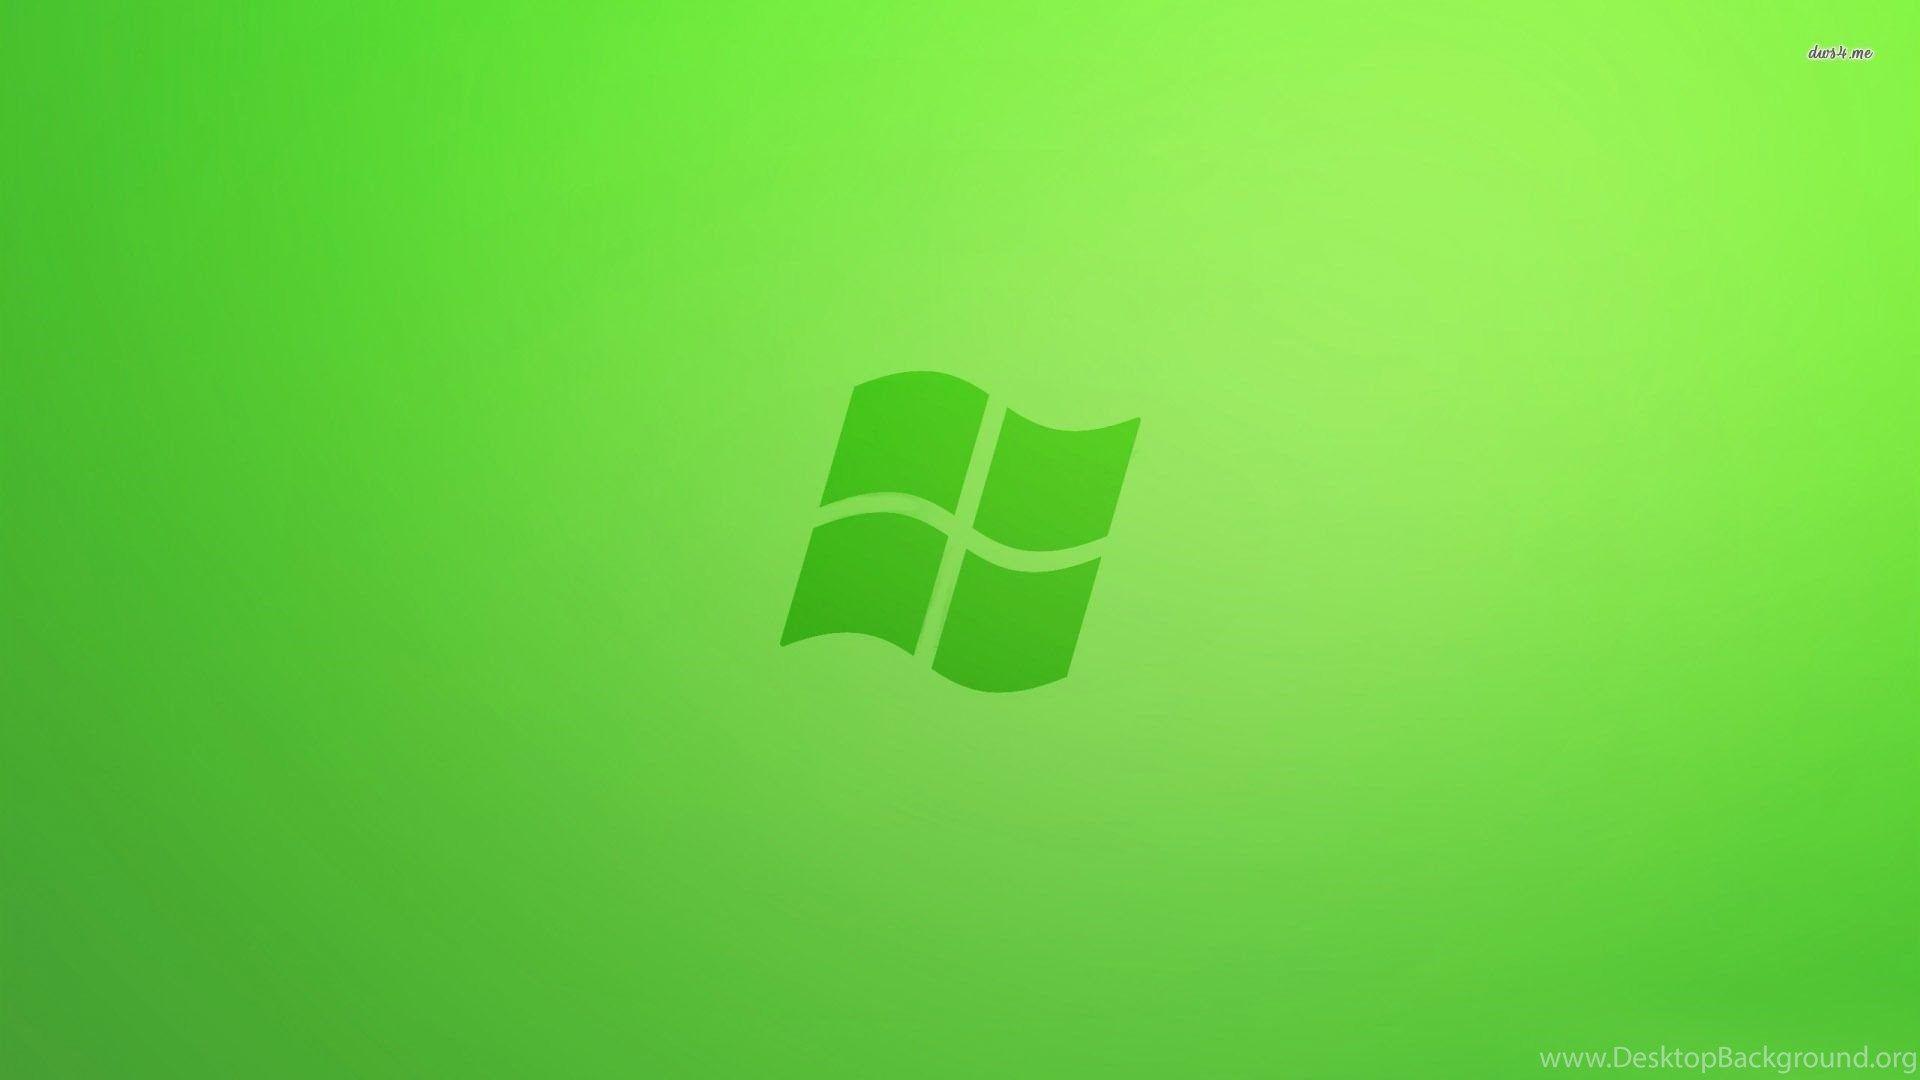 Lime Green Windows Logo - Green Windows 7 Wallpaper Computer Wallpaper Desktop Background